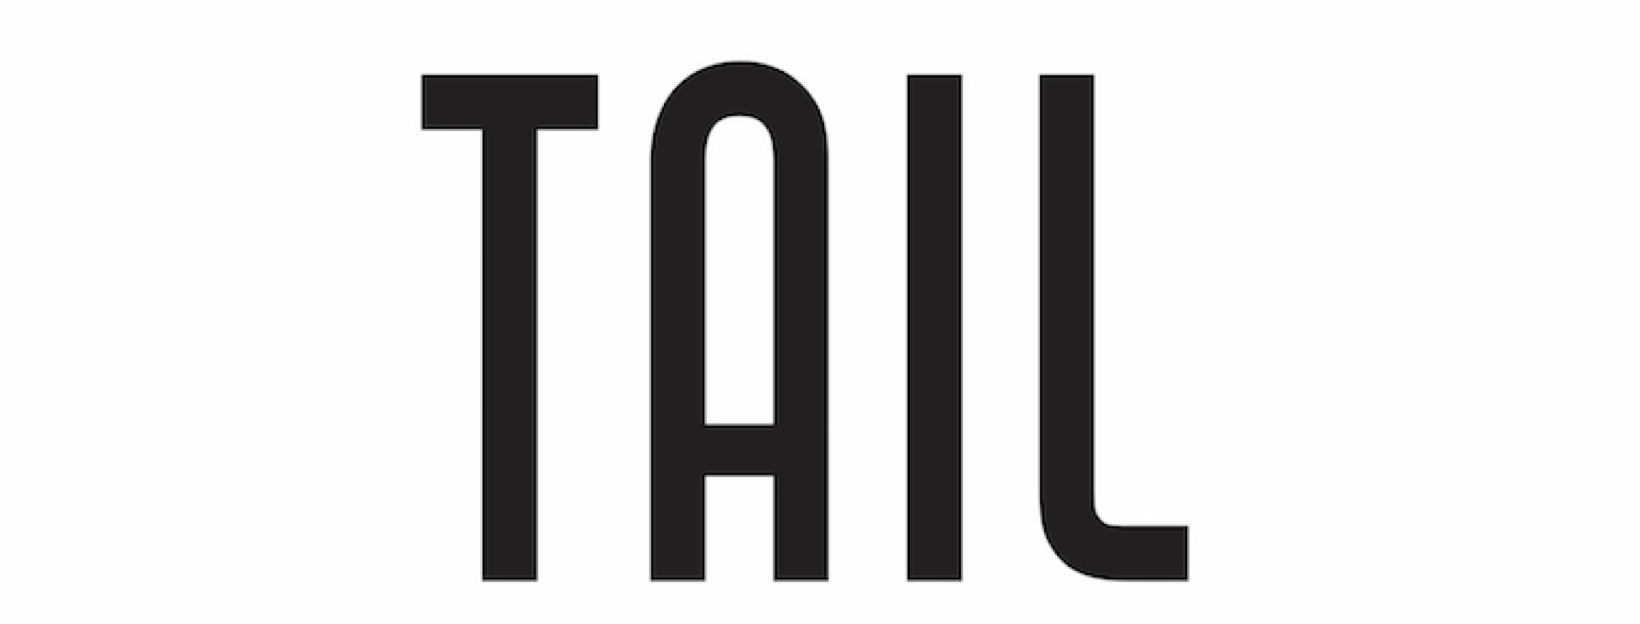 Tail Activewear logo